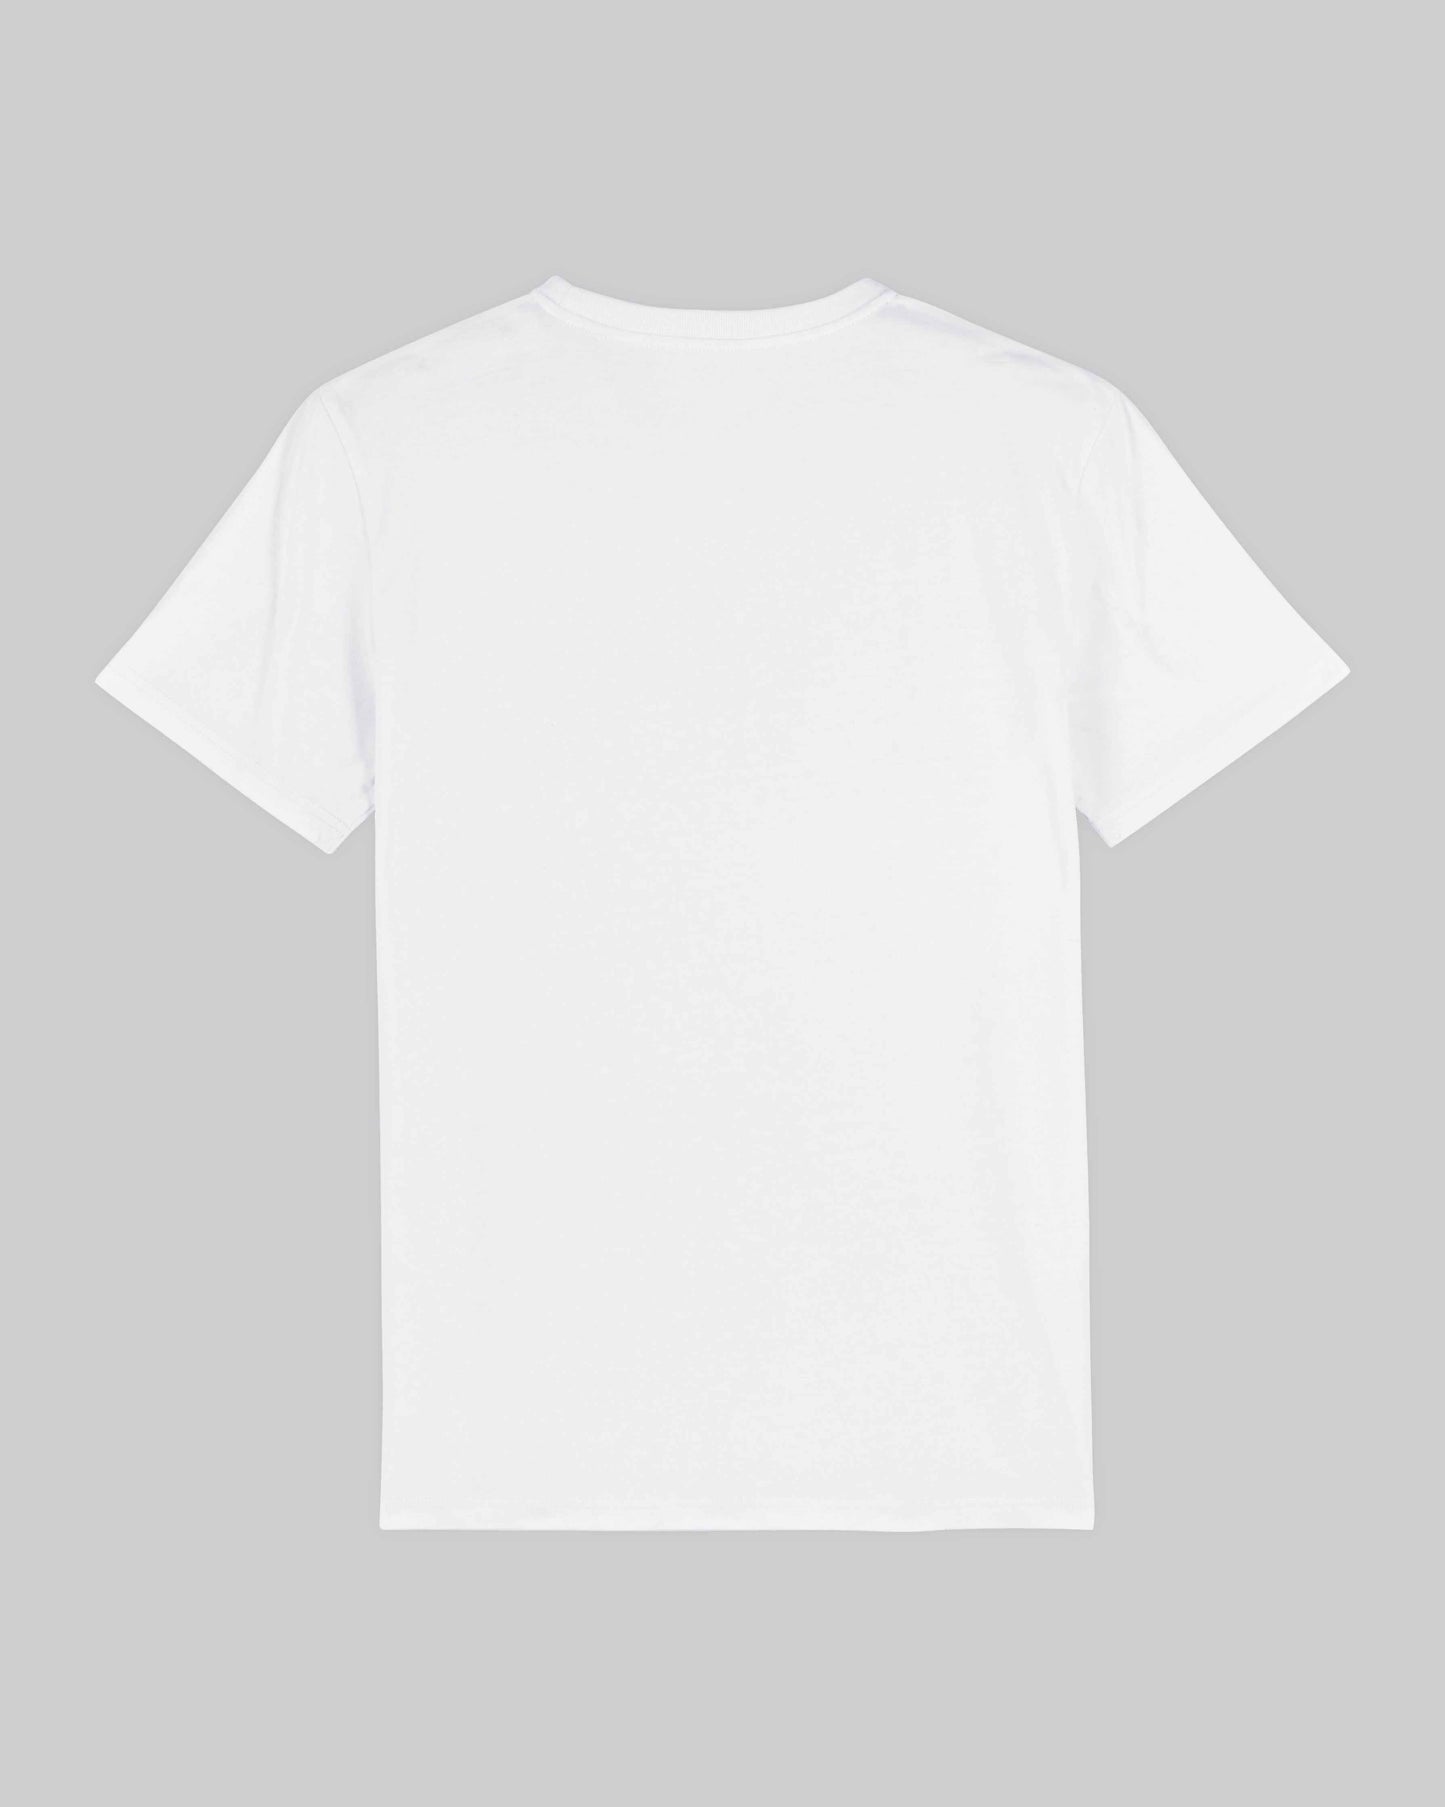 EINHORST® unisex Organic Shirt in weiß mit dem Motiv "equal-Regenbogen" in der Kombination schwarzer Regenbogen mit bunter Schrift, Bild von Shirt von hinten